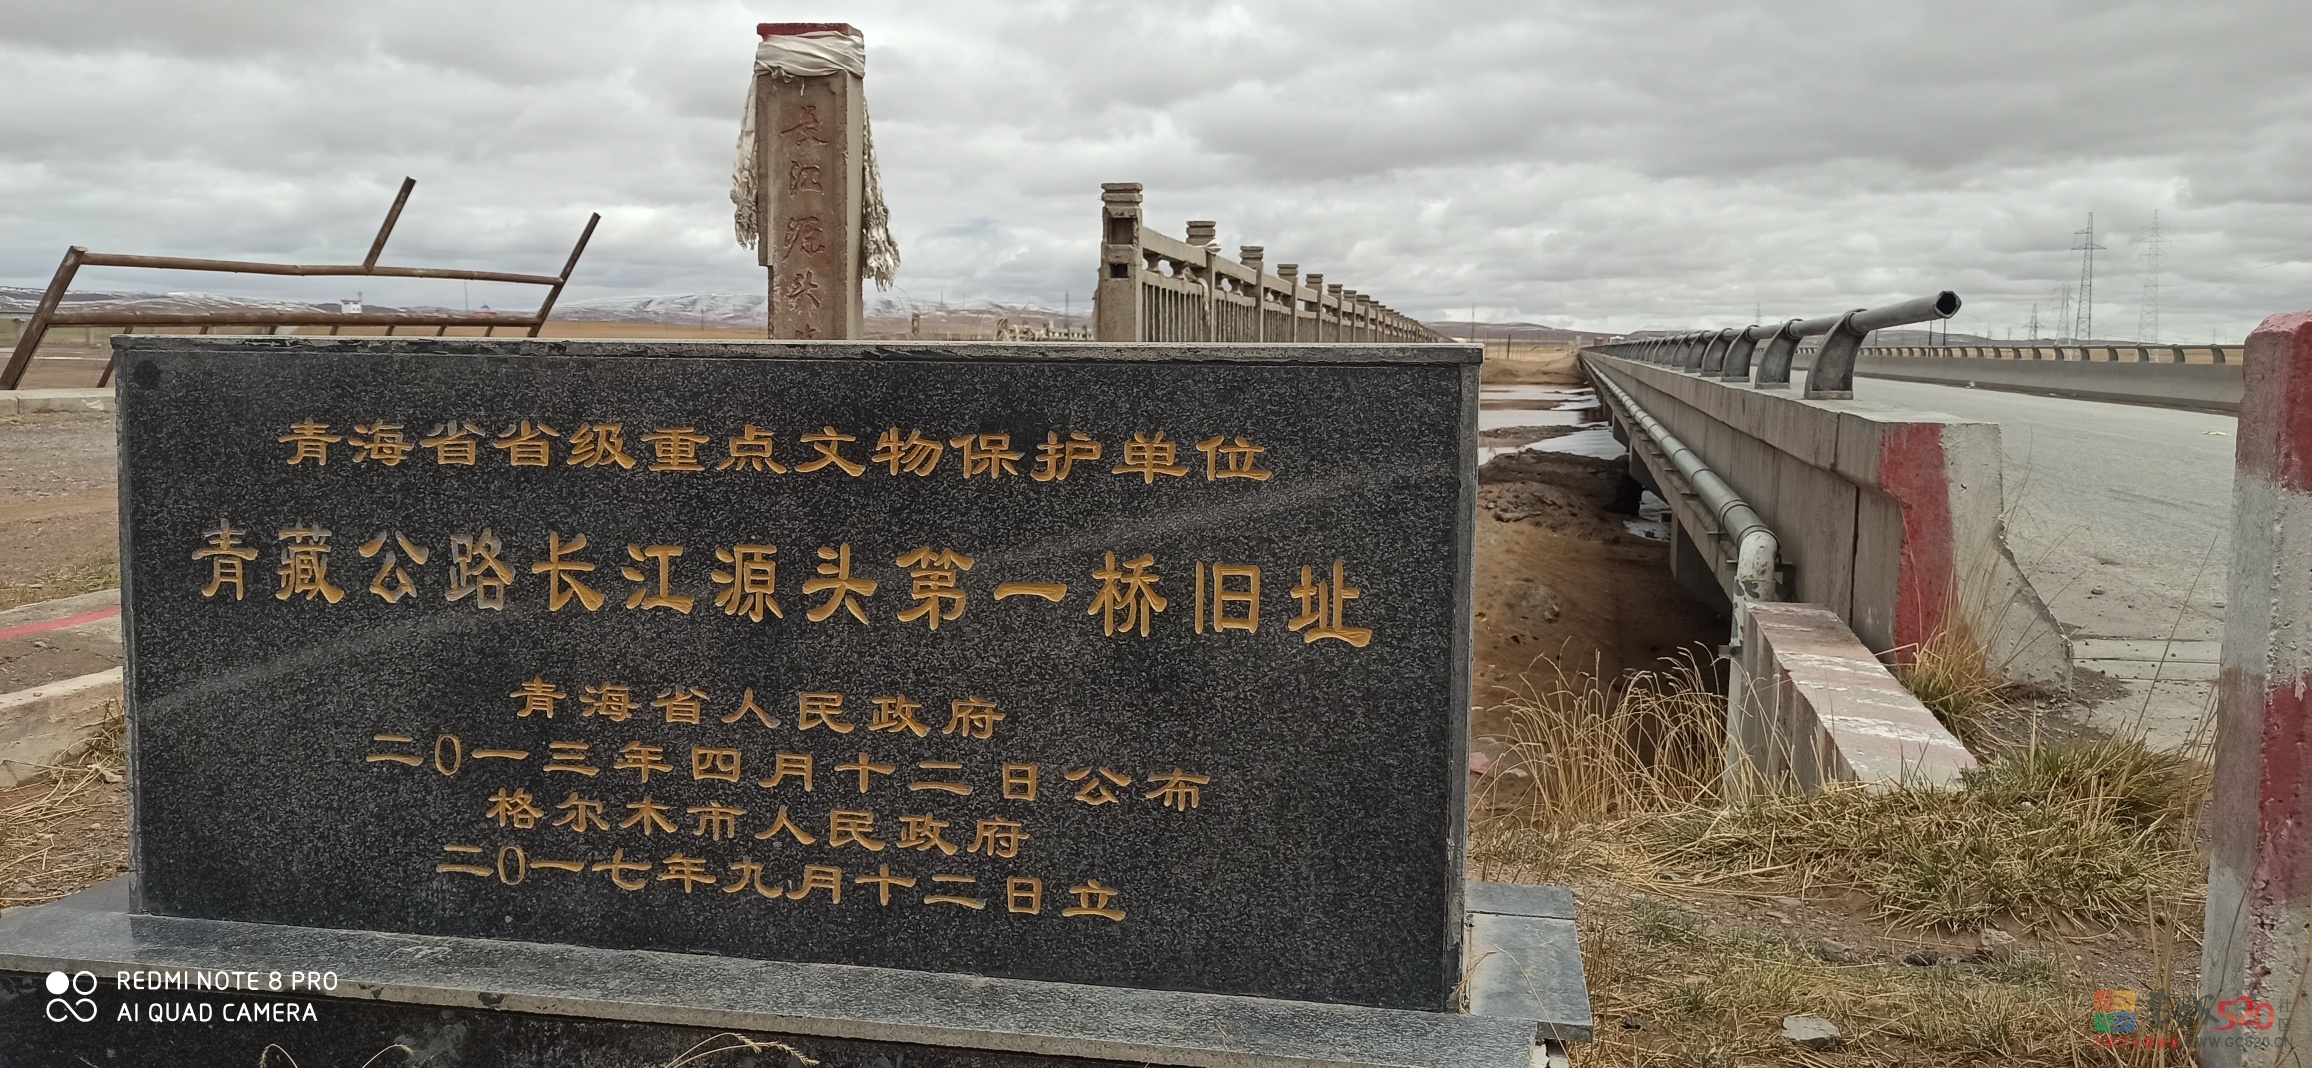 109国道青藏公路途中冒死也要看的景点绘萃682 / 作者:罗古 / 帖子ID:275353